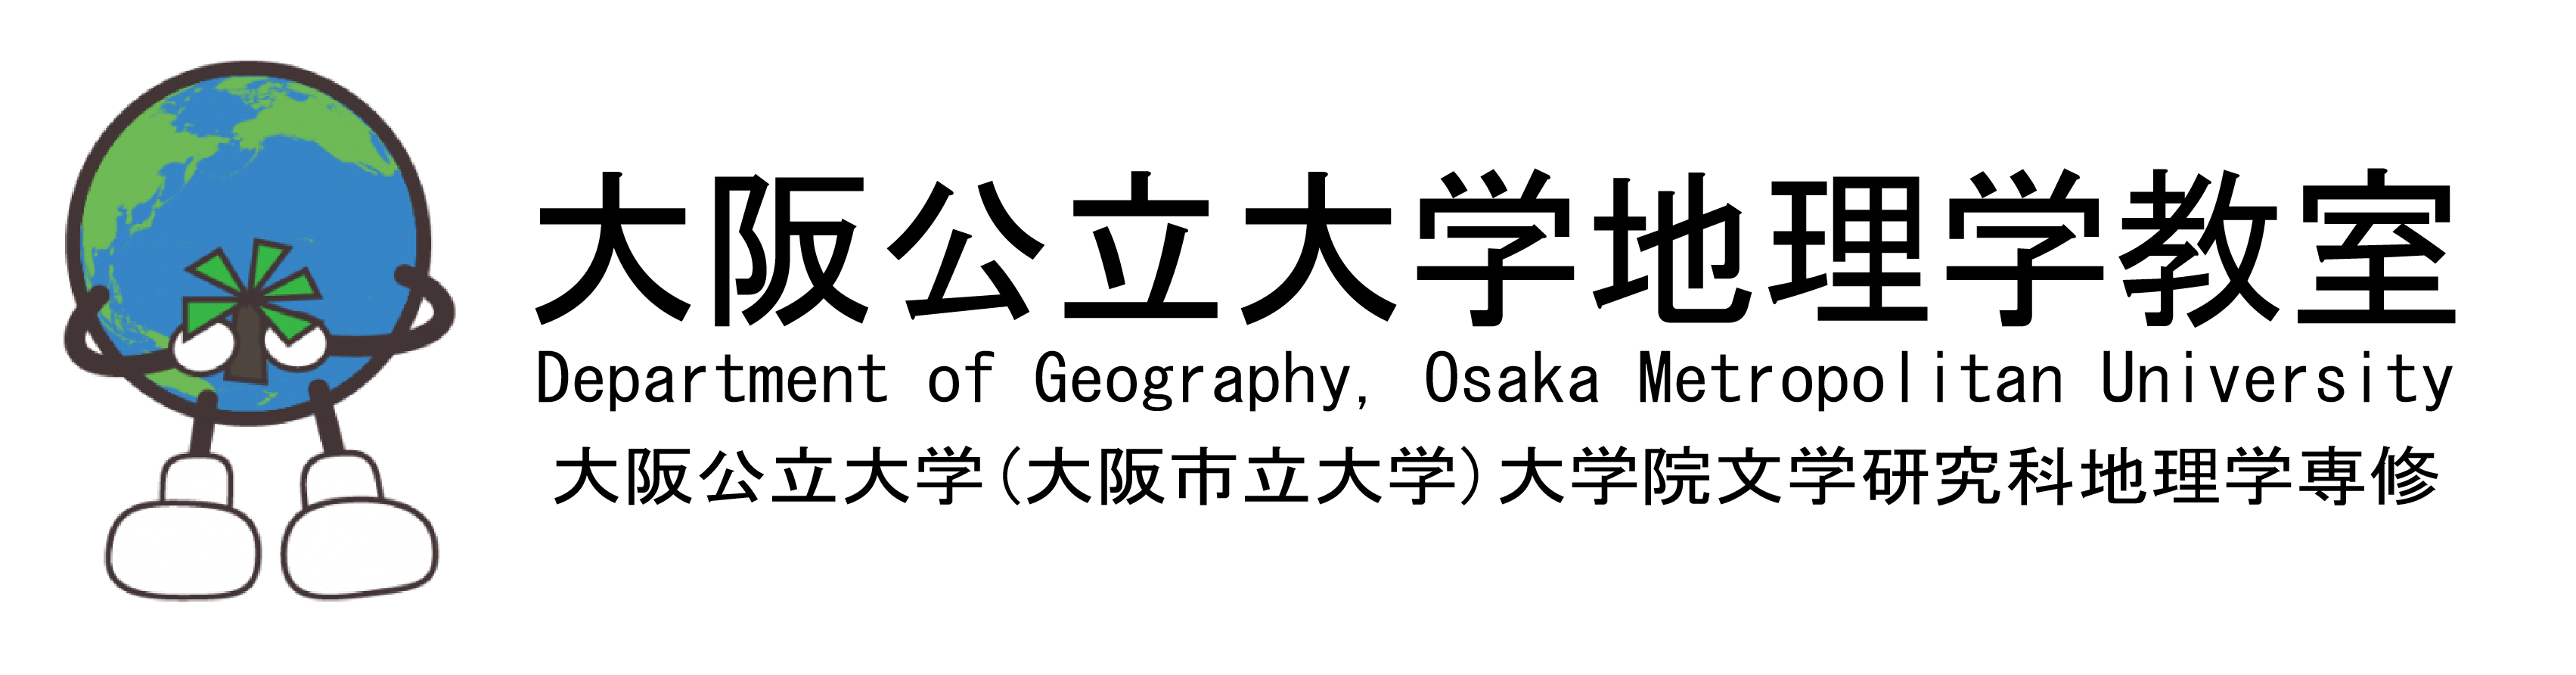 大阪市立大学 地理学教室